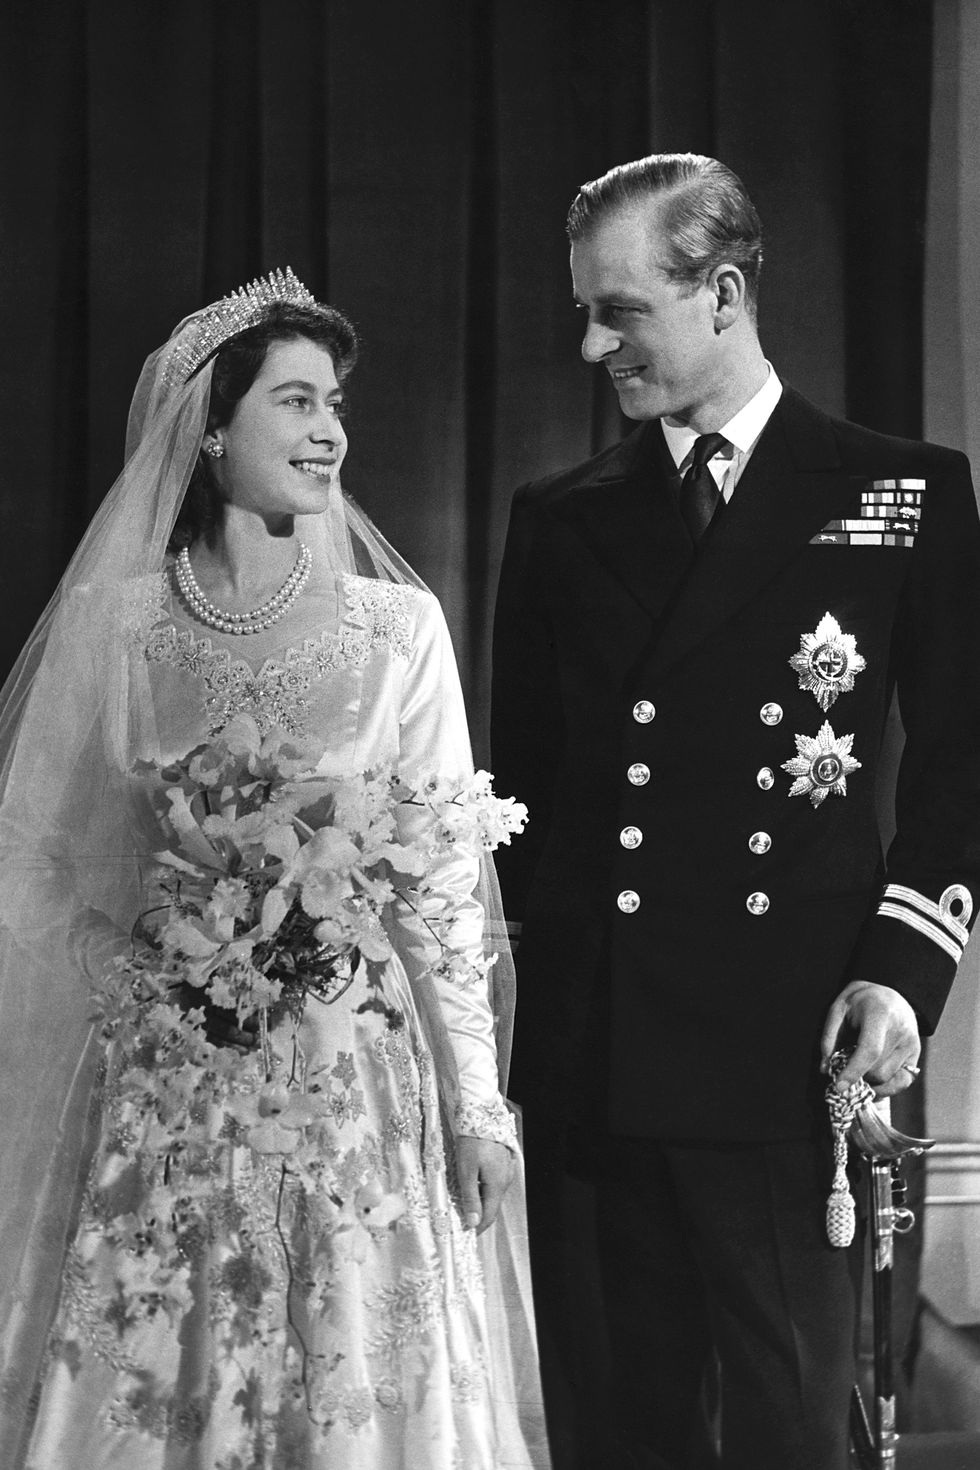 Nữ hoàng Elizabeth II và Hoàng thân Philip: Những khoảnh khắc đẹp nhất - Ảnh 2.